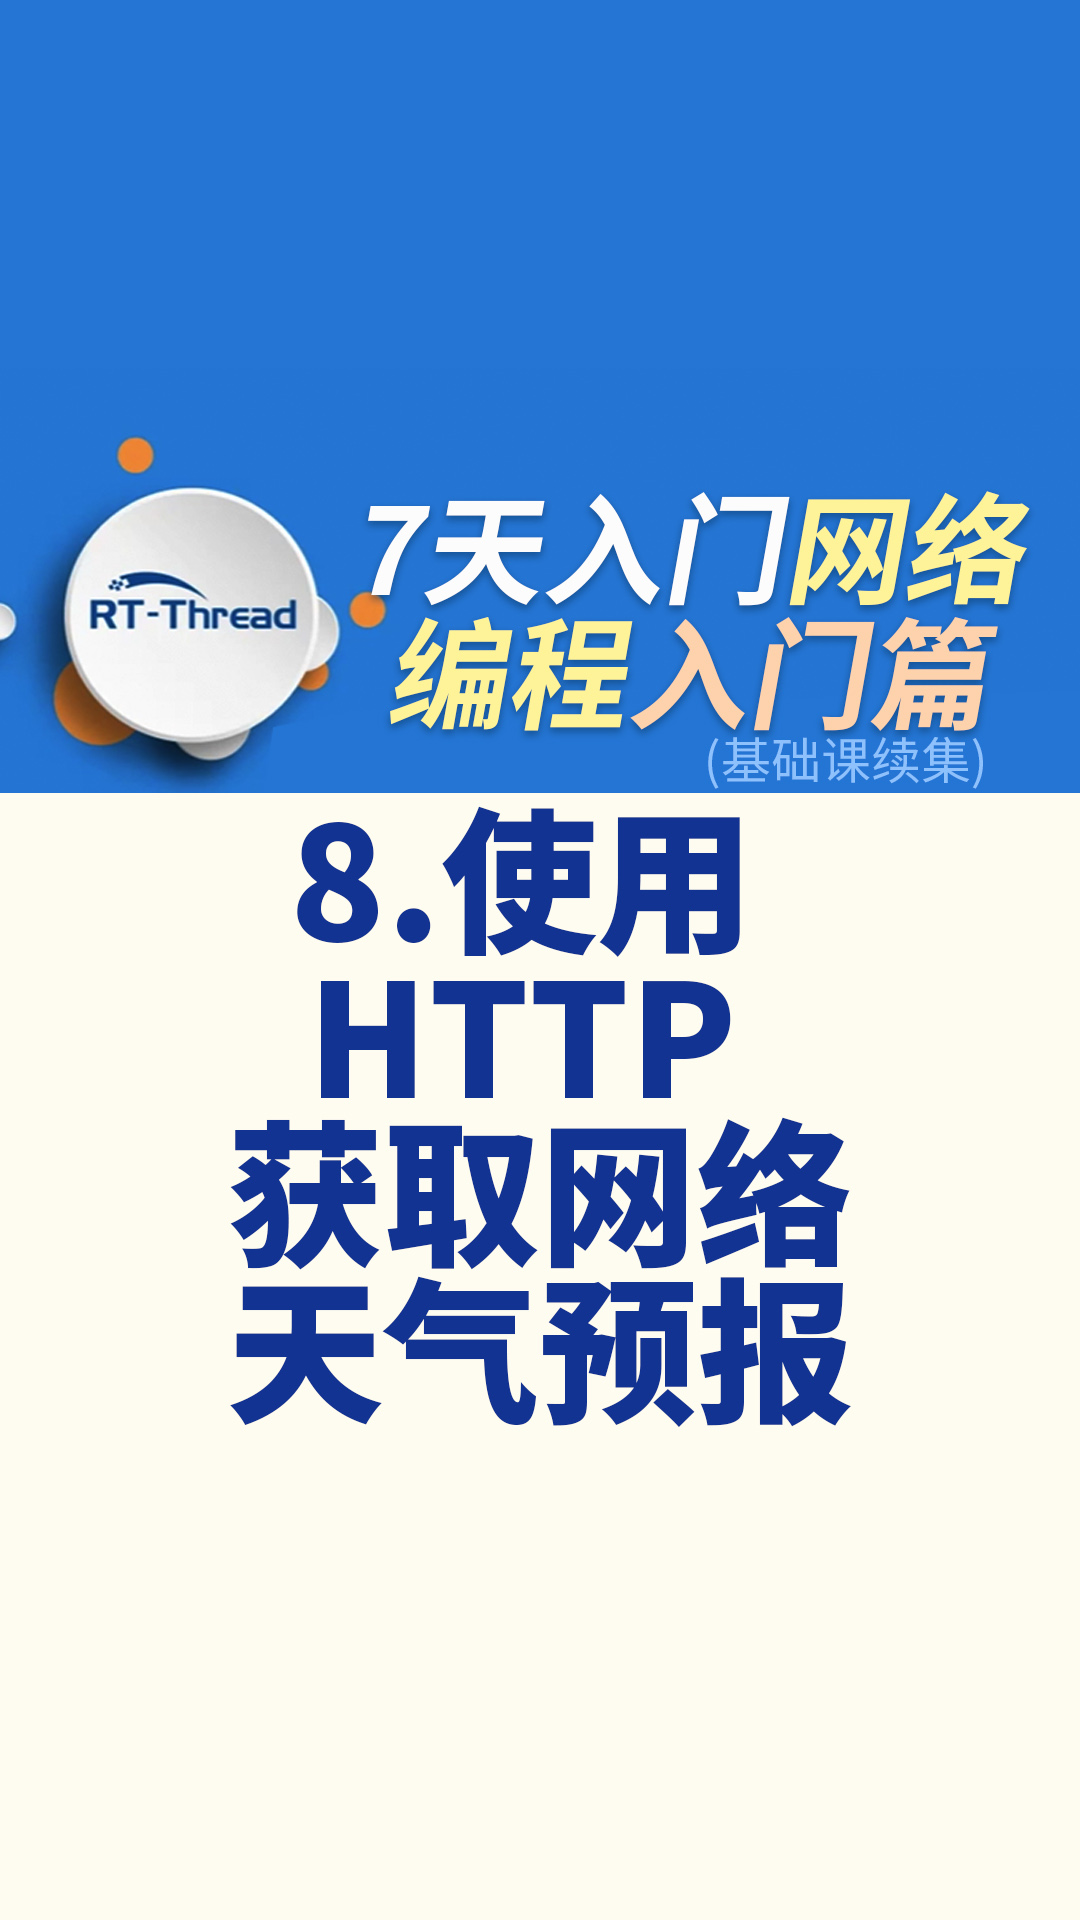 7天入门网络编程 - 8.使用 HTTP 获取网络天气预报   #网络编程 